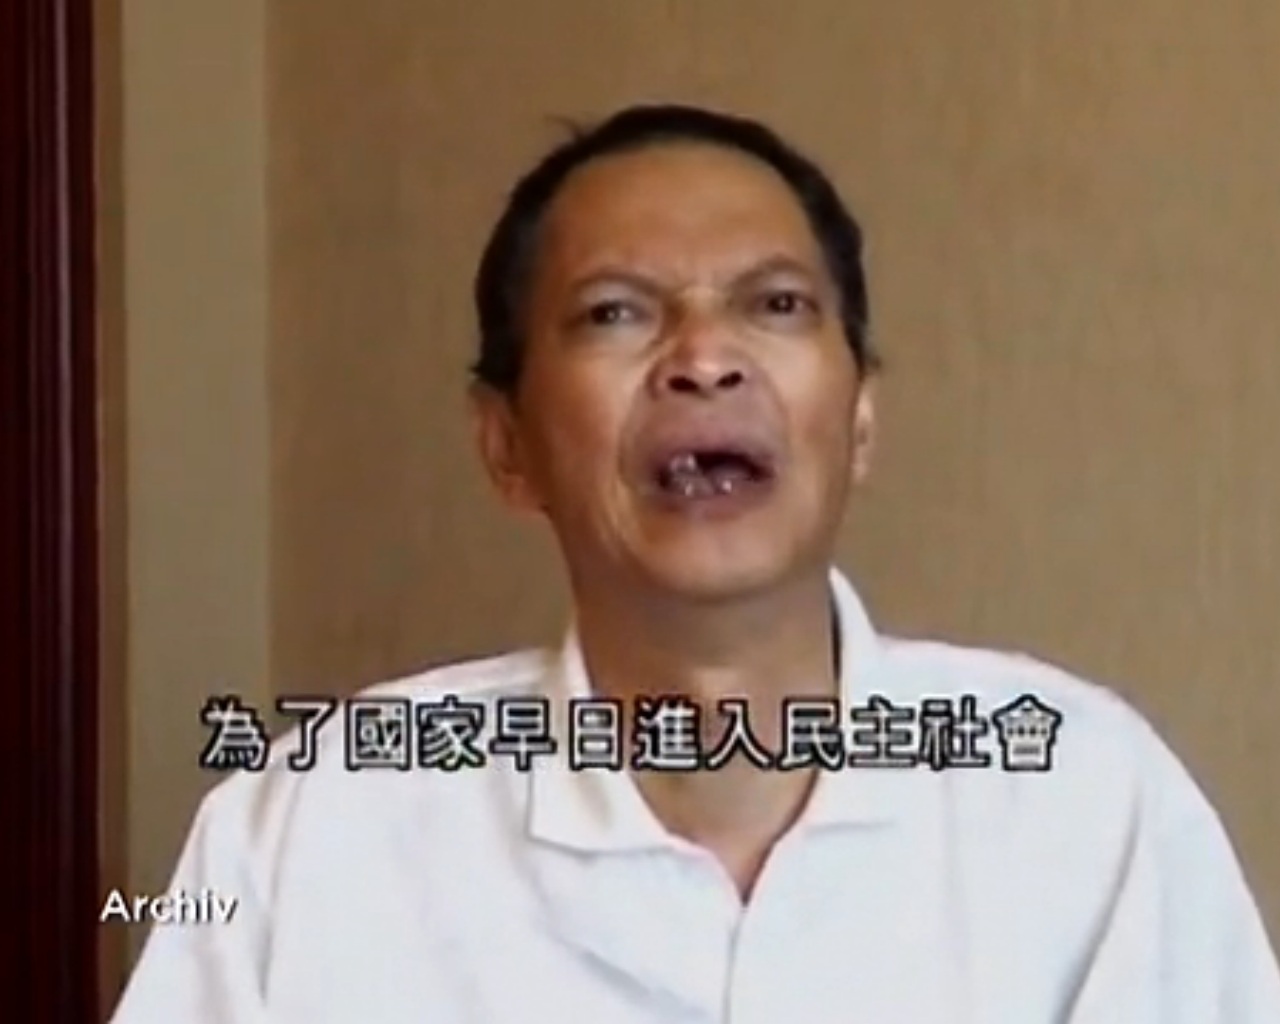 Aktivisten fordern Aufklärung zu Li Wangyans Tod in Hongkong